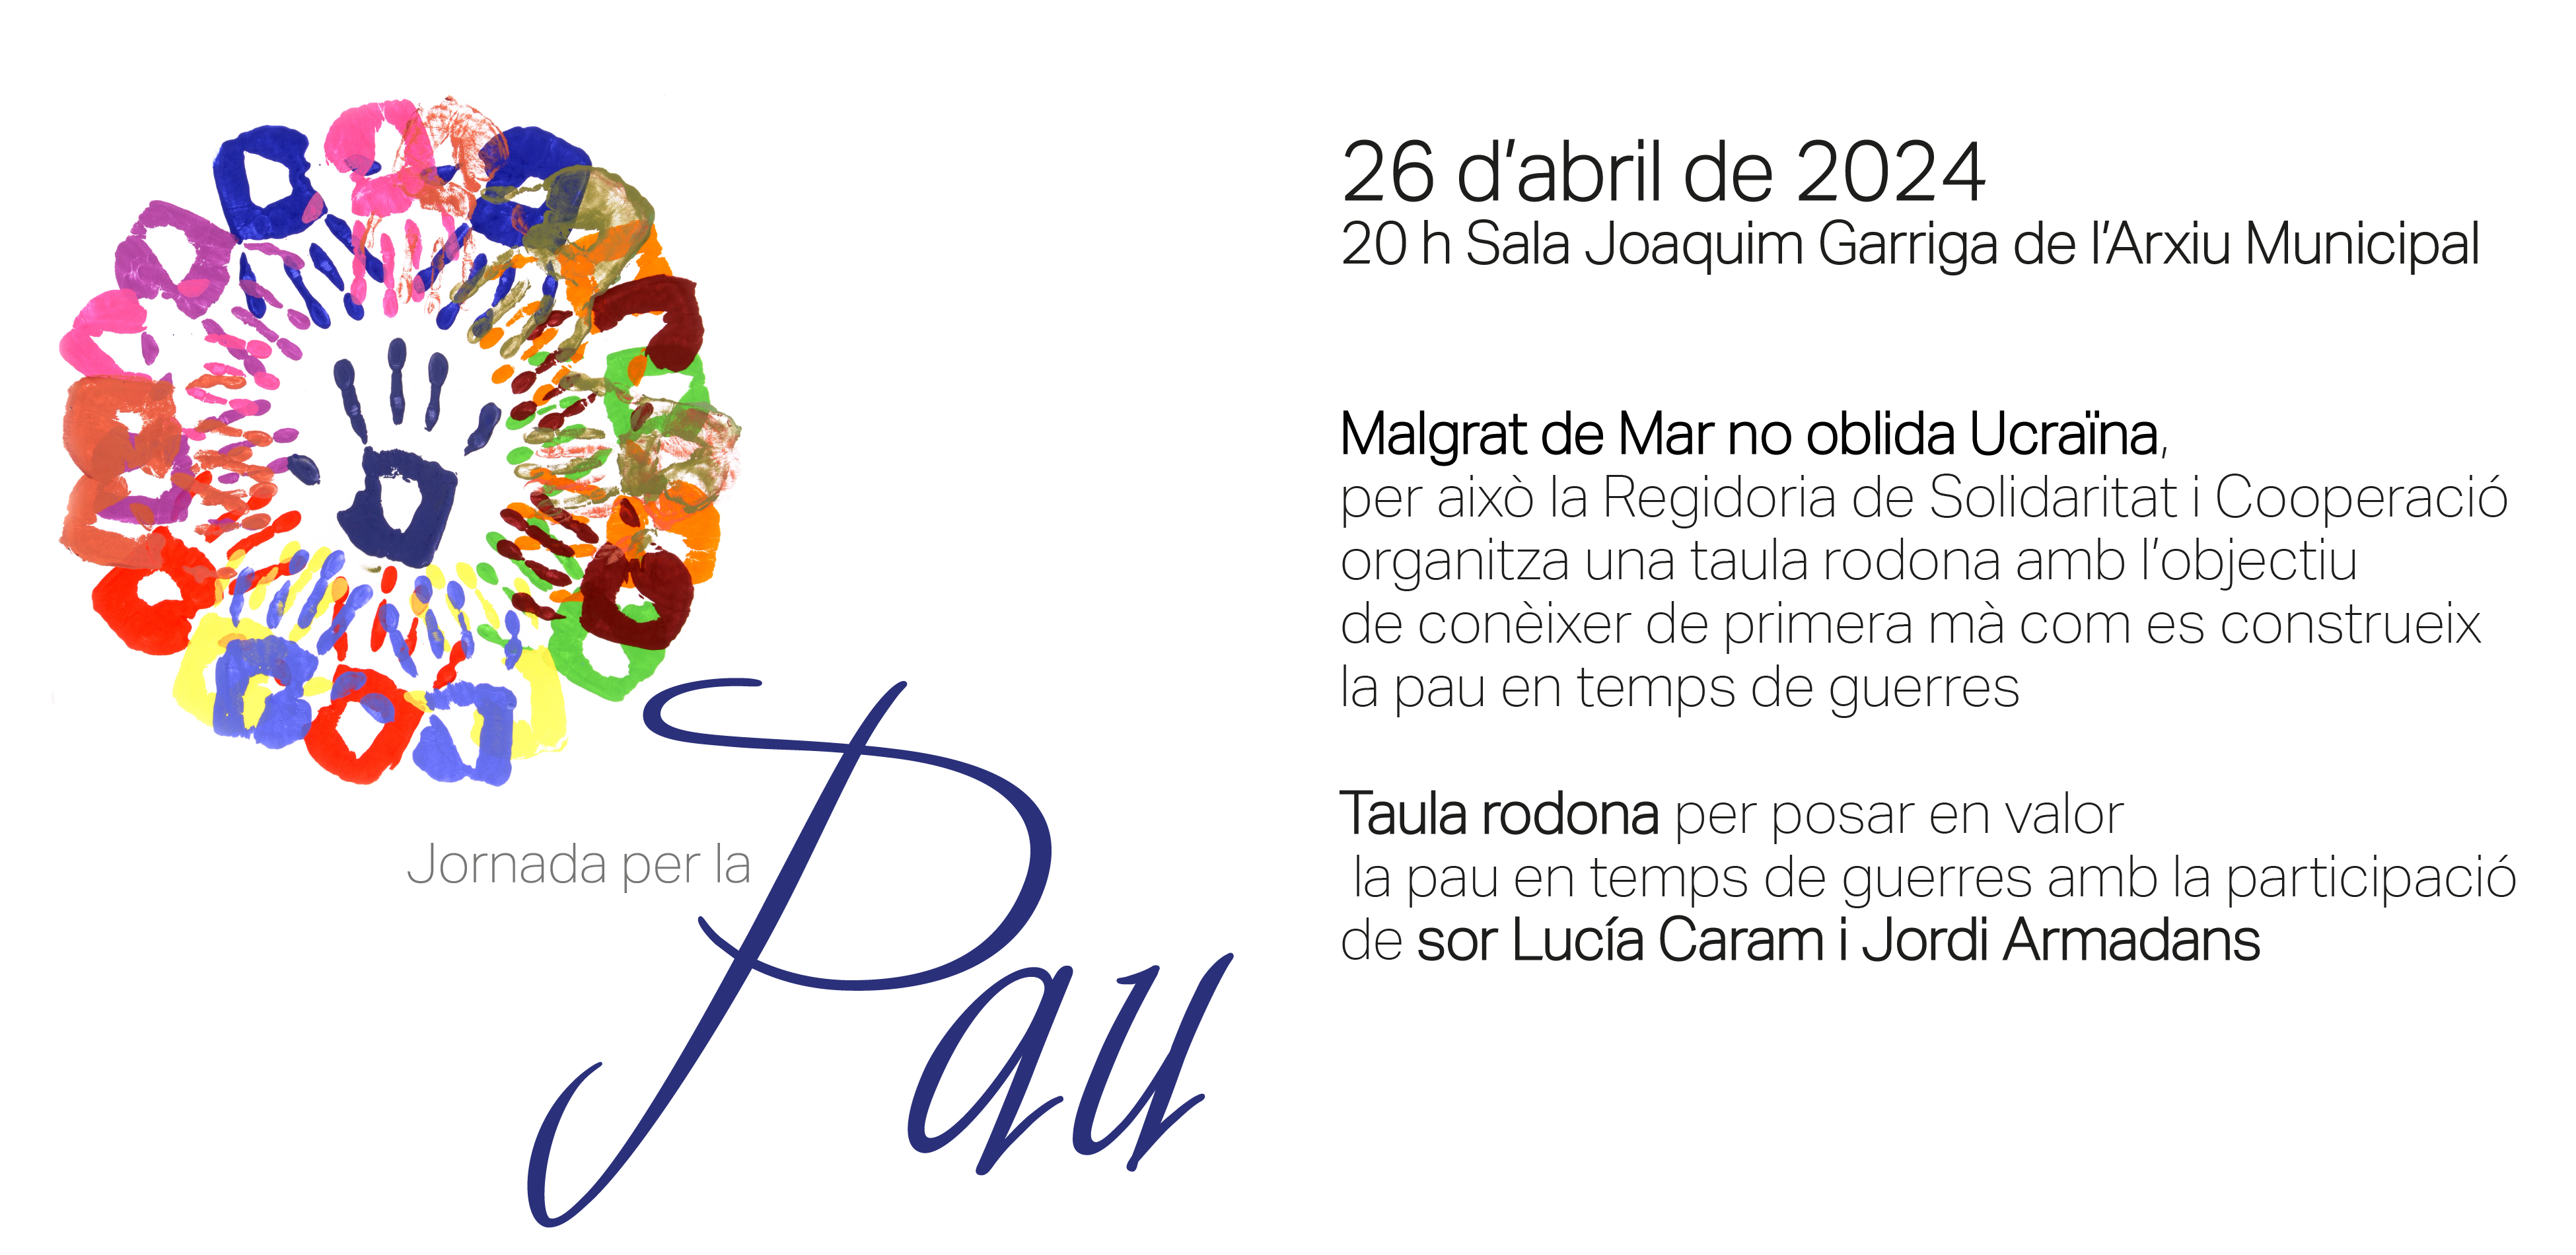 Sor Lucía Caram i Jordi Armadans participen avui en una taula rodona sobre la pau en temps de guerres